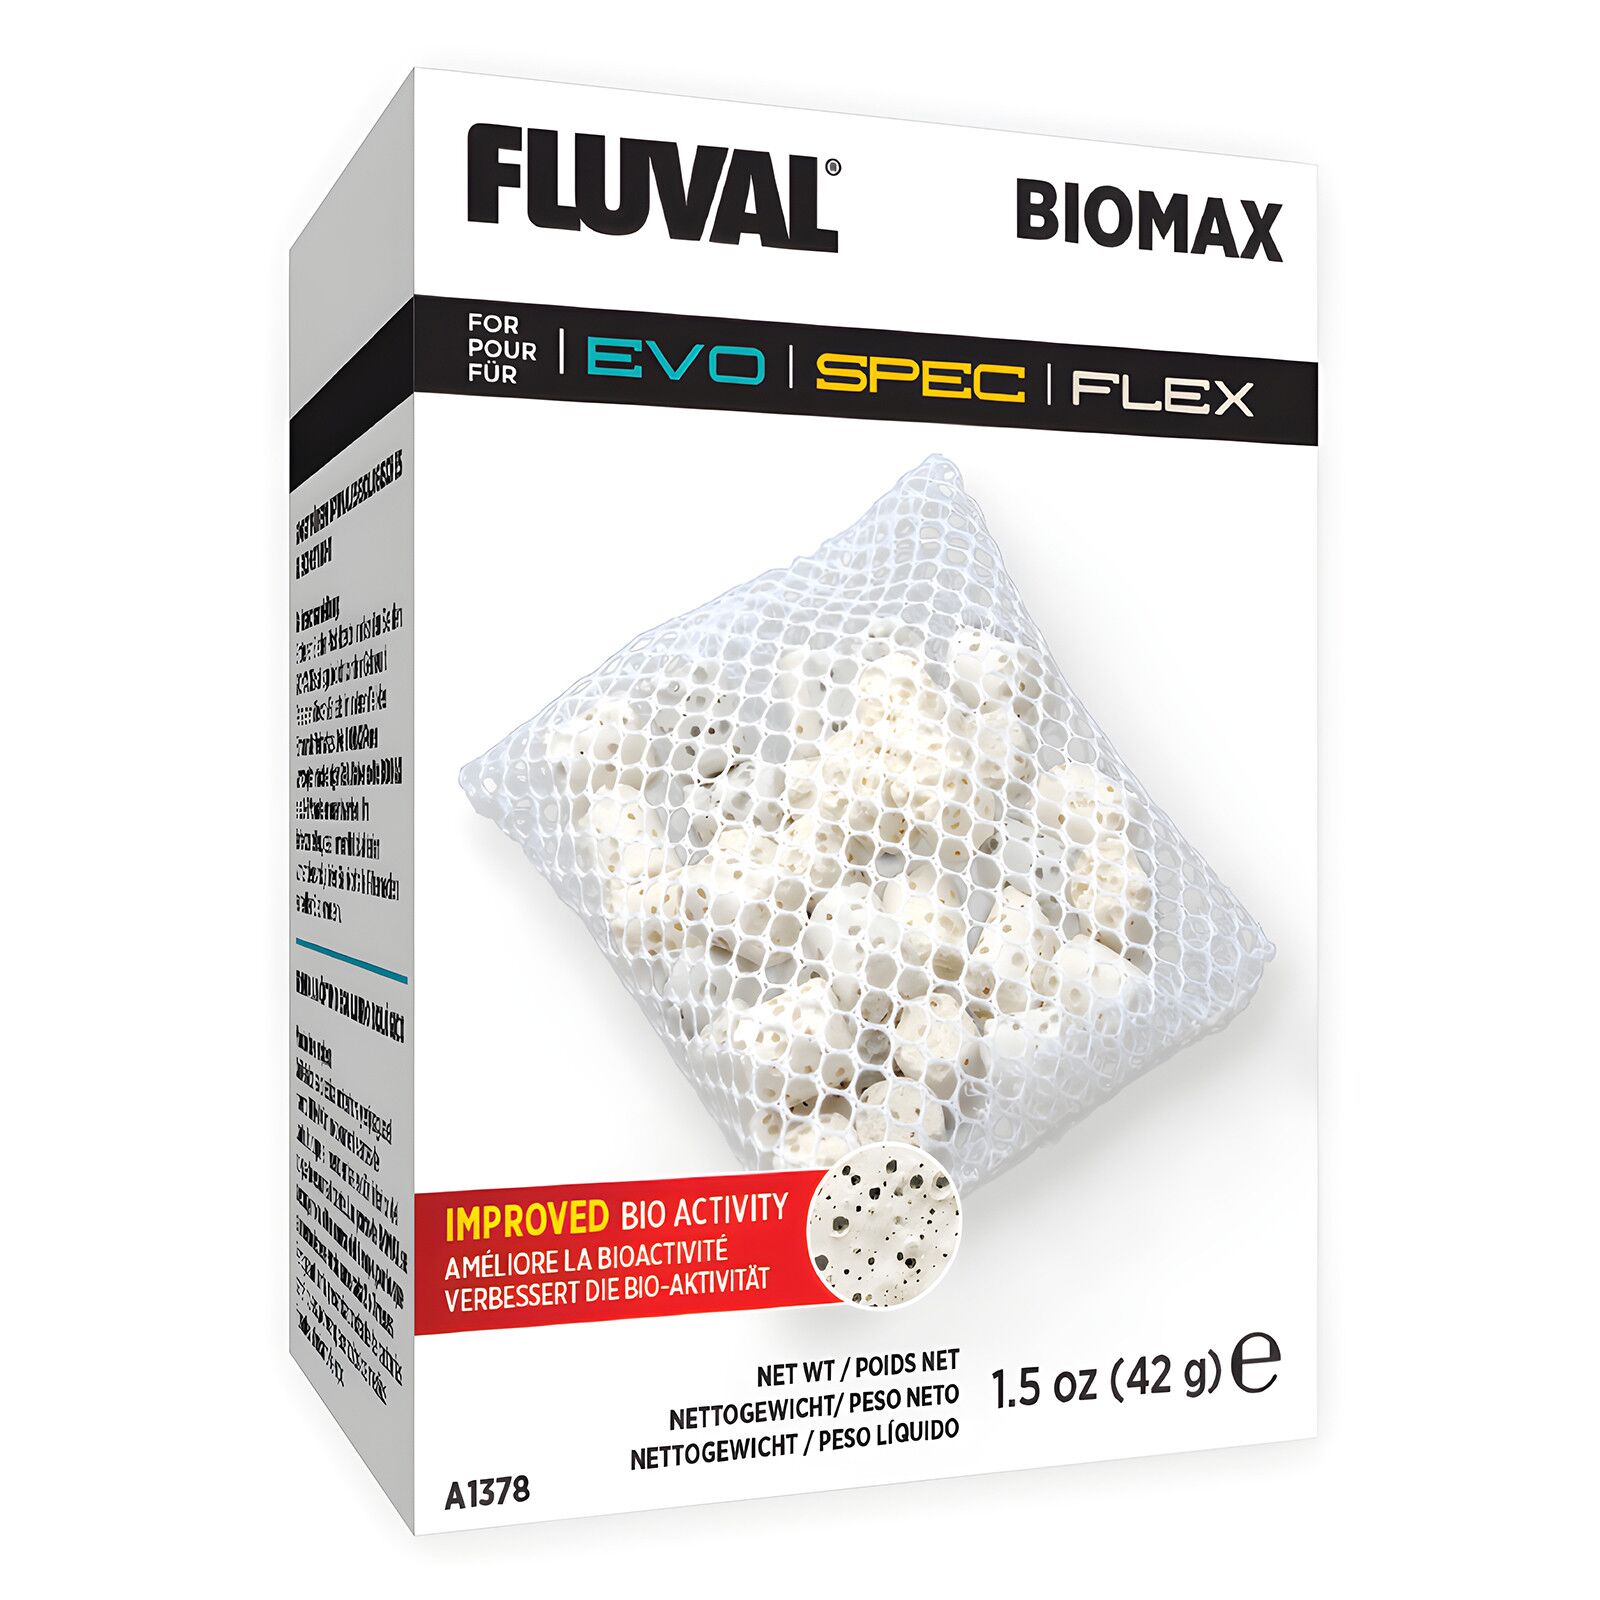 Fluval - SPEC/FLEX Replacement Biomax